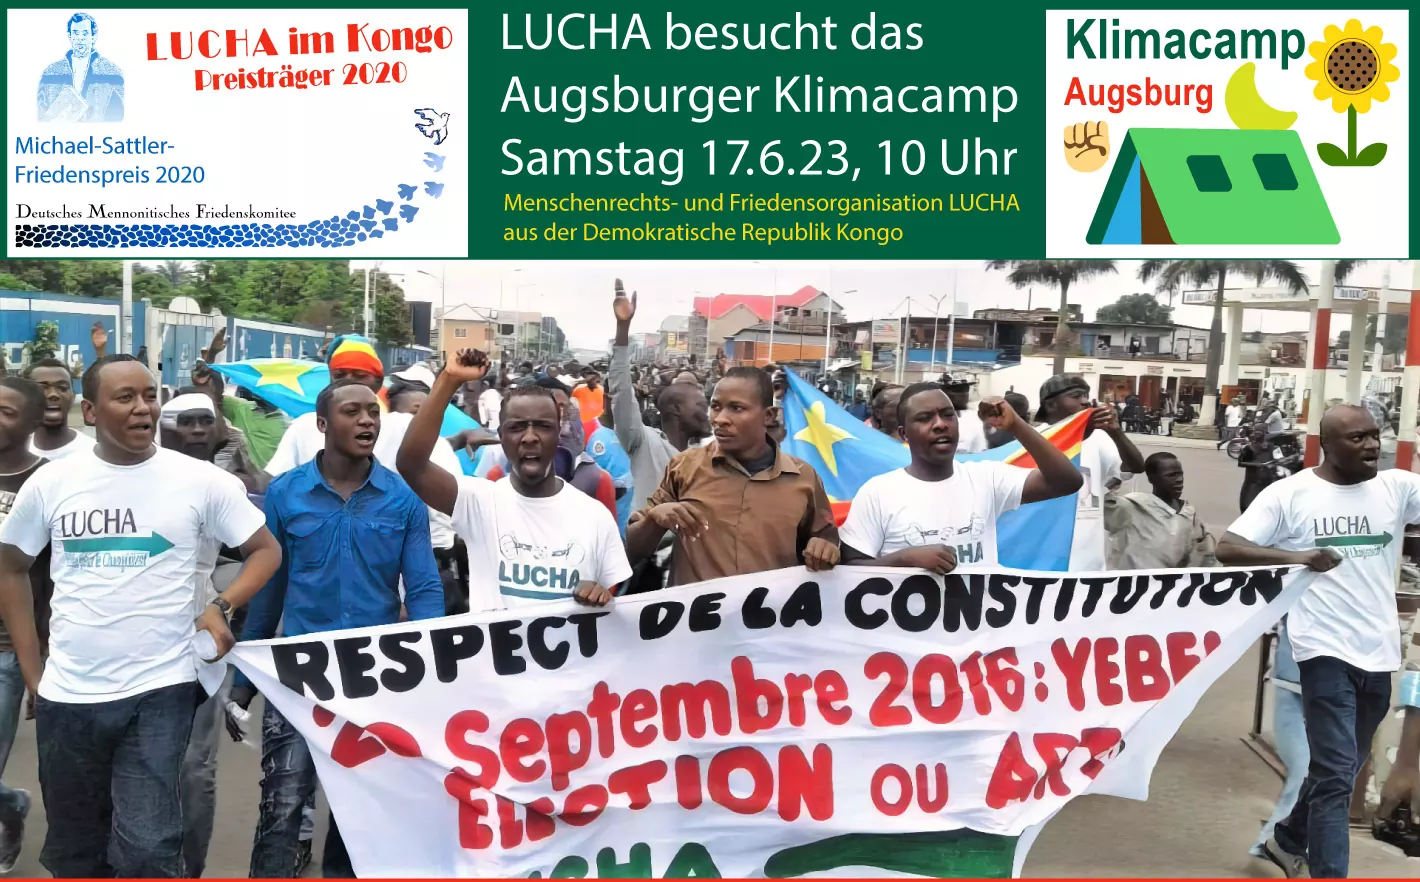 LUCHA aus Kongo besucht Klimacamp Augsburg